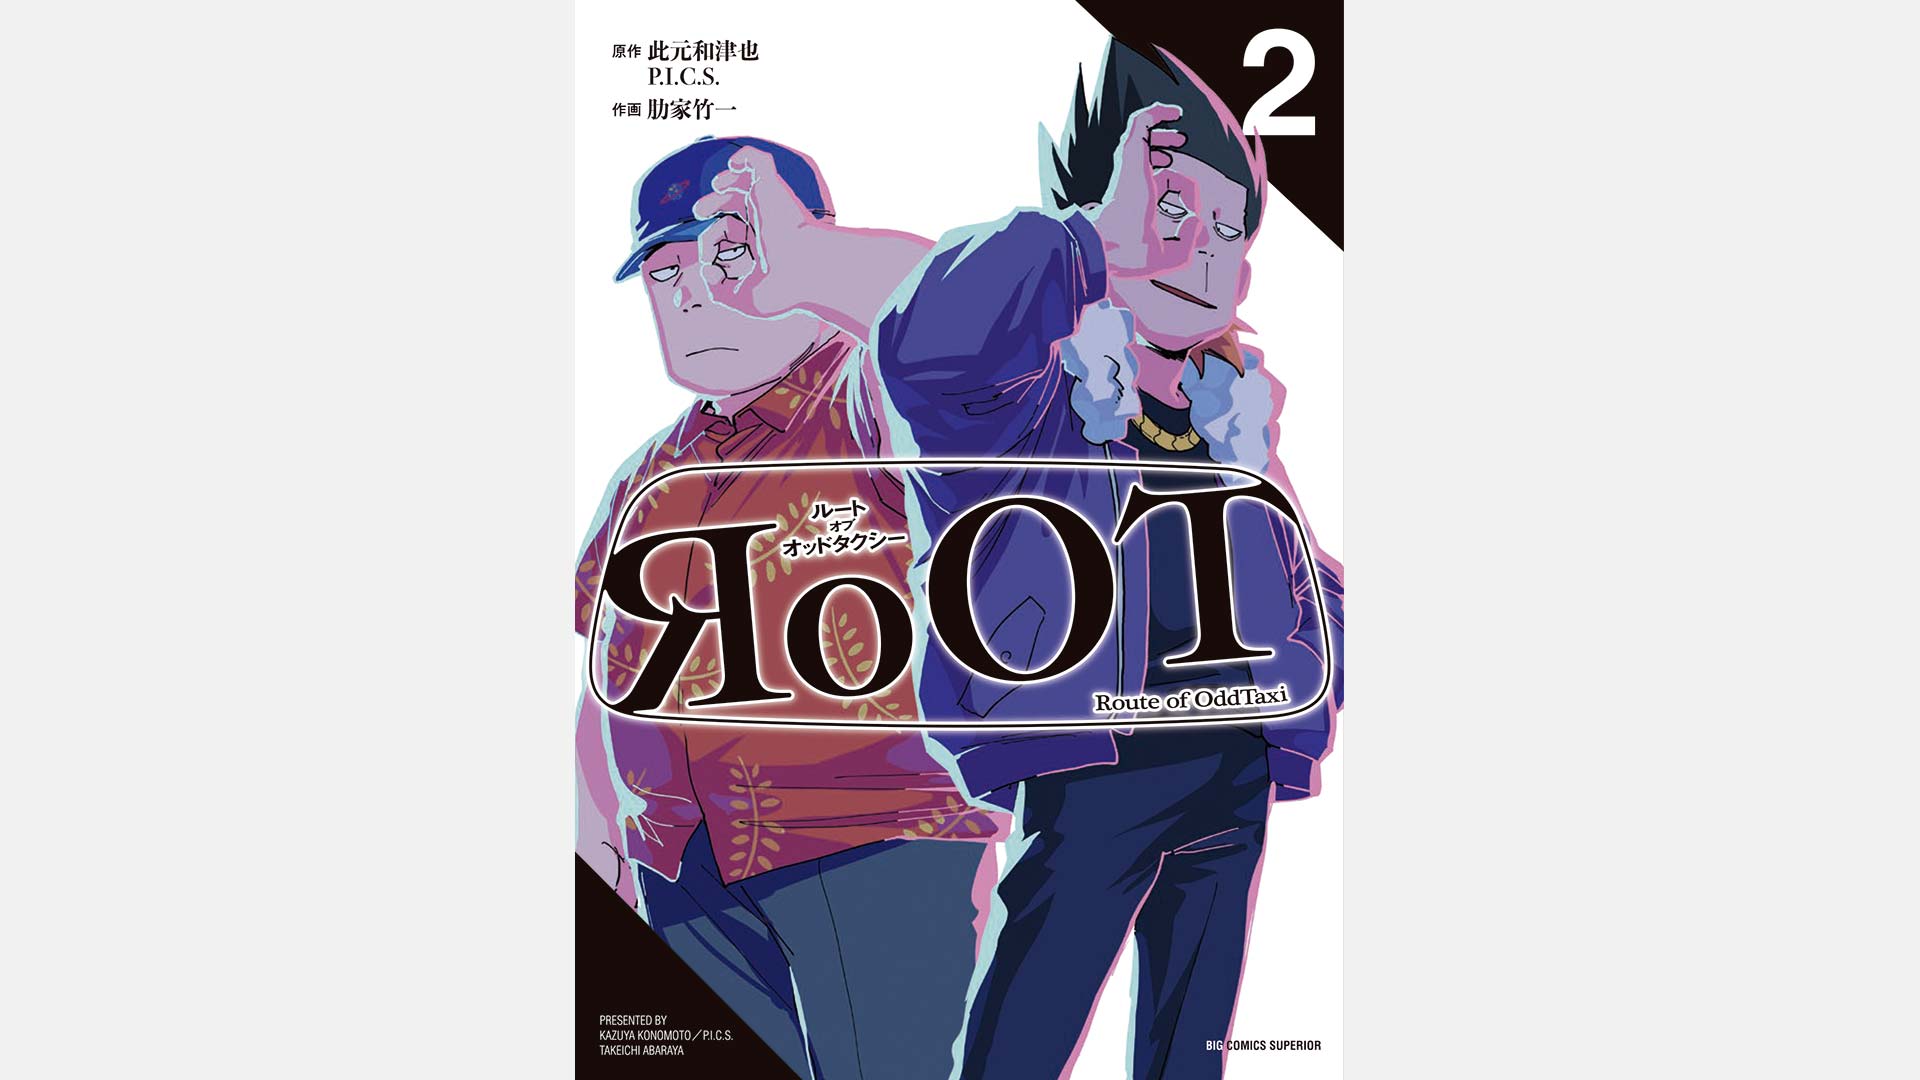 コミック『RoOT / ルート オブ オッドタクシー』単行本第2集 9月28日発売。